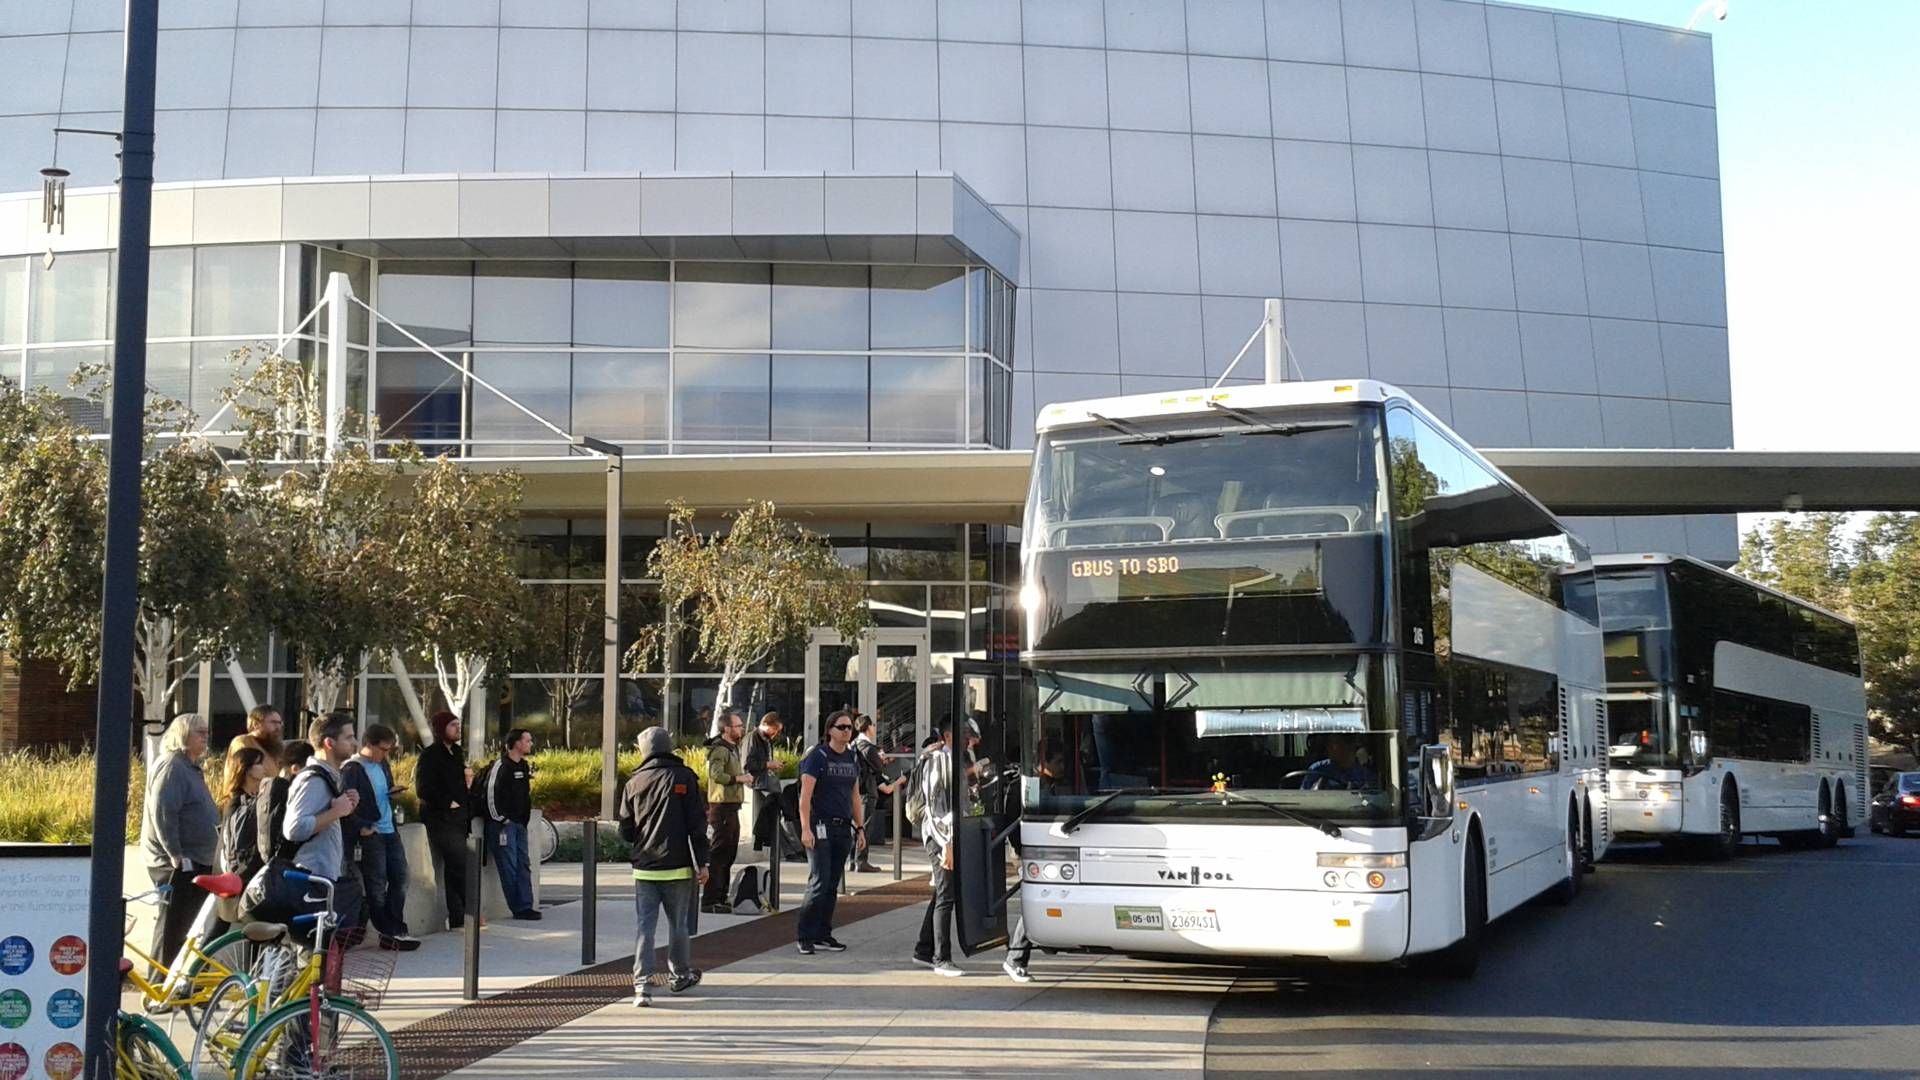 Silicon Valley og San Francisco er kendt for store trafikproblemer, og flere større virksomheder har oprettet egne transportsystemer. Her henter Google ansatte med sine egne busser.